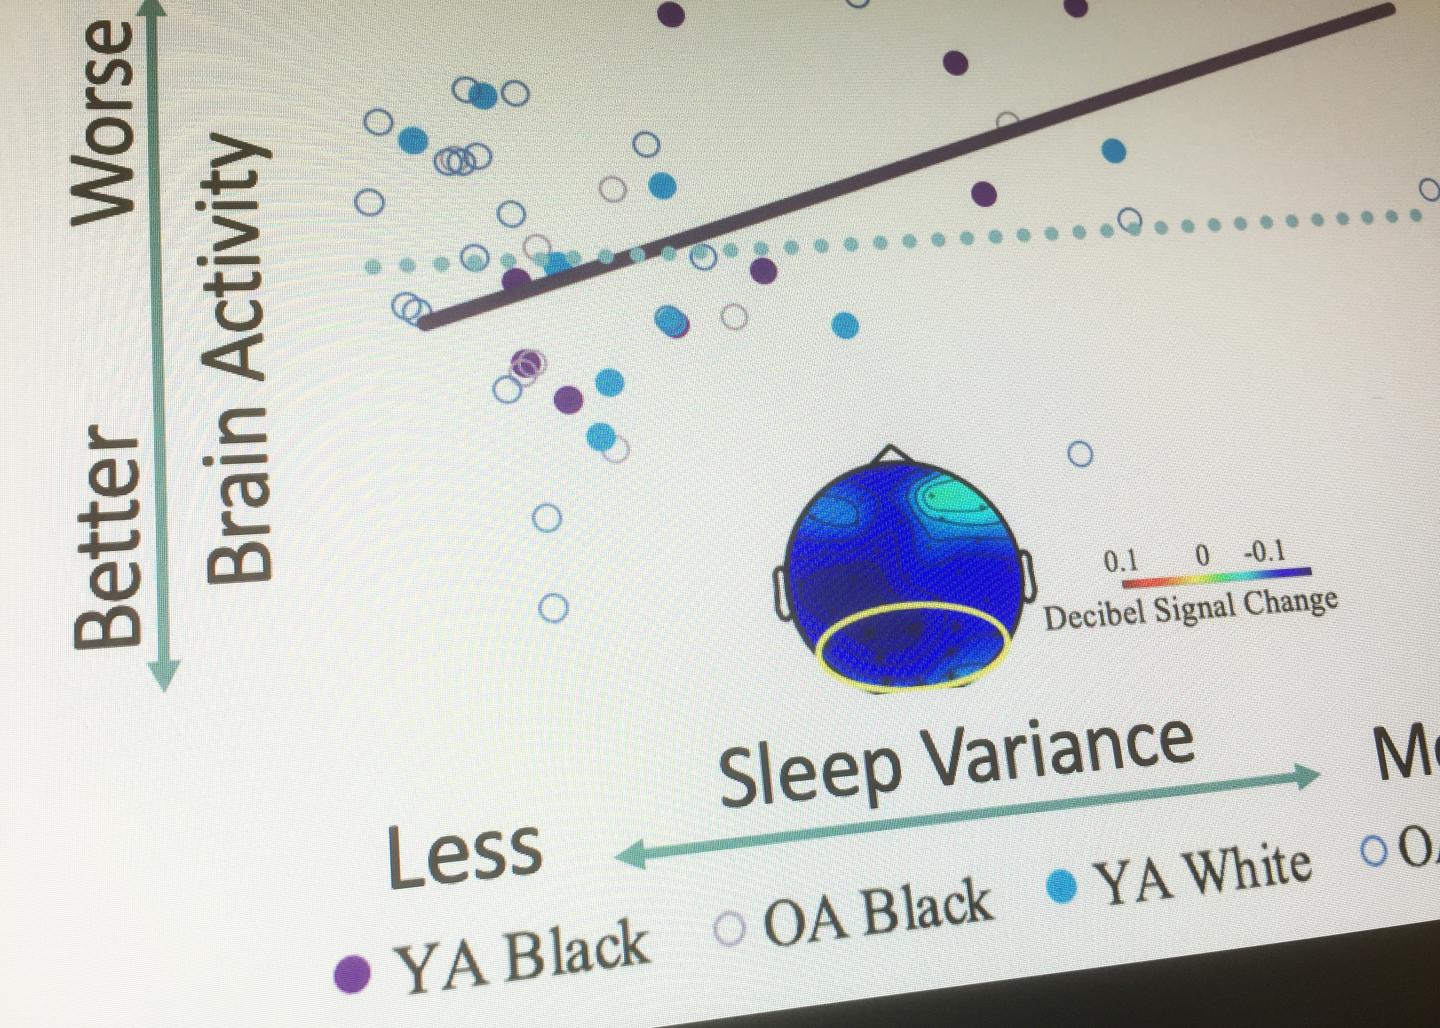 Relationship between Sleep and Brain Activity